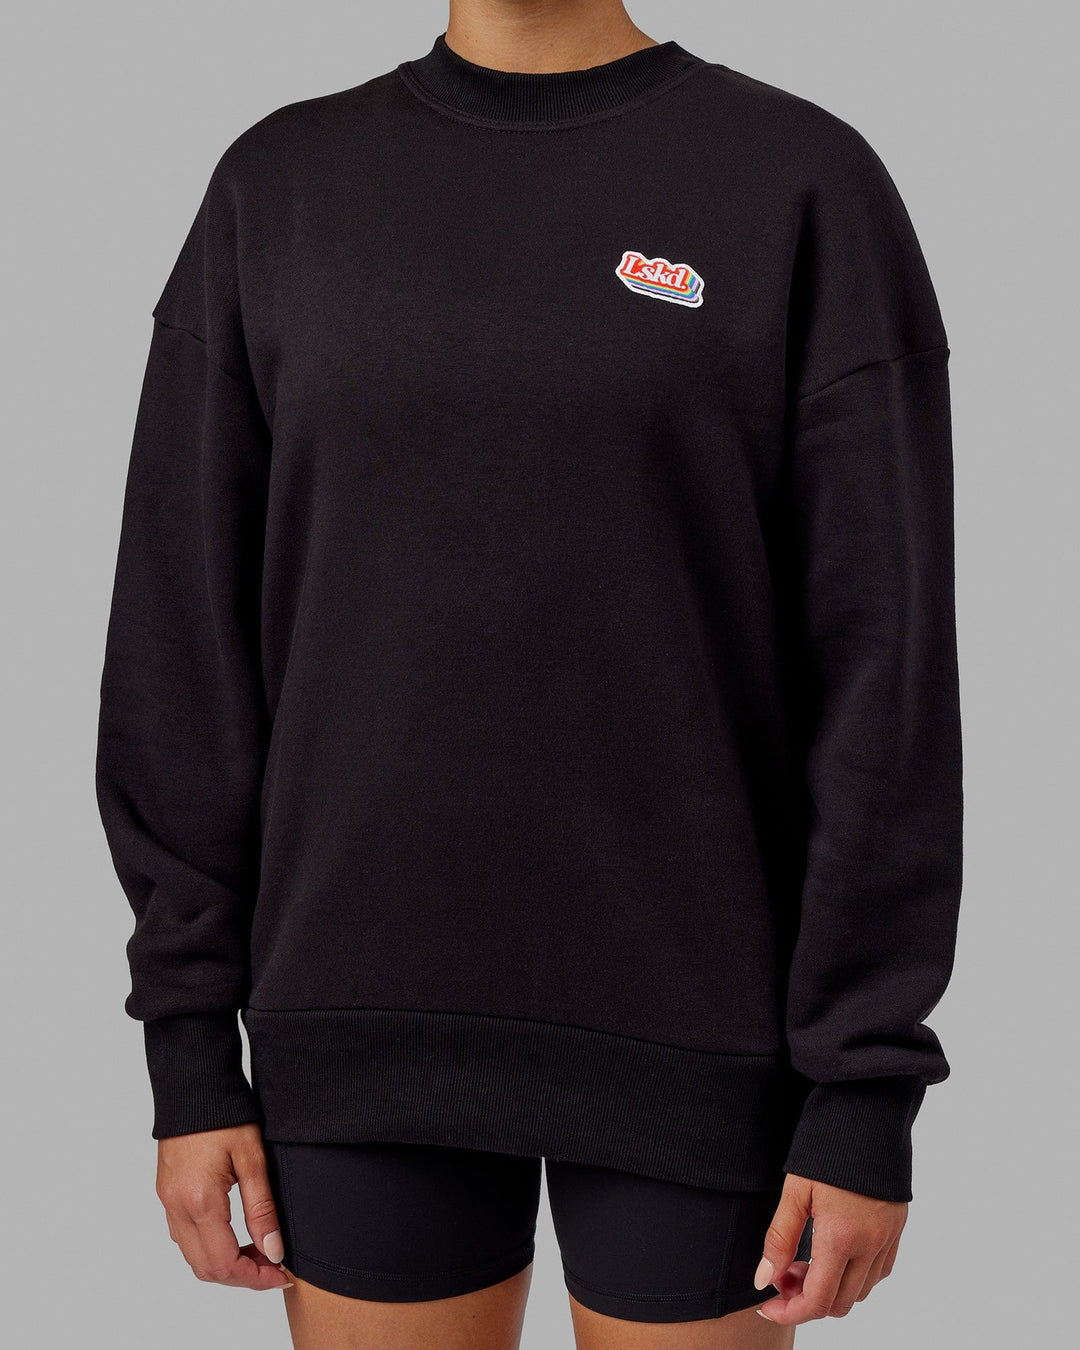 Woman wearing Unisex Radiate Sweater Oversize - Black